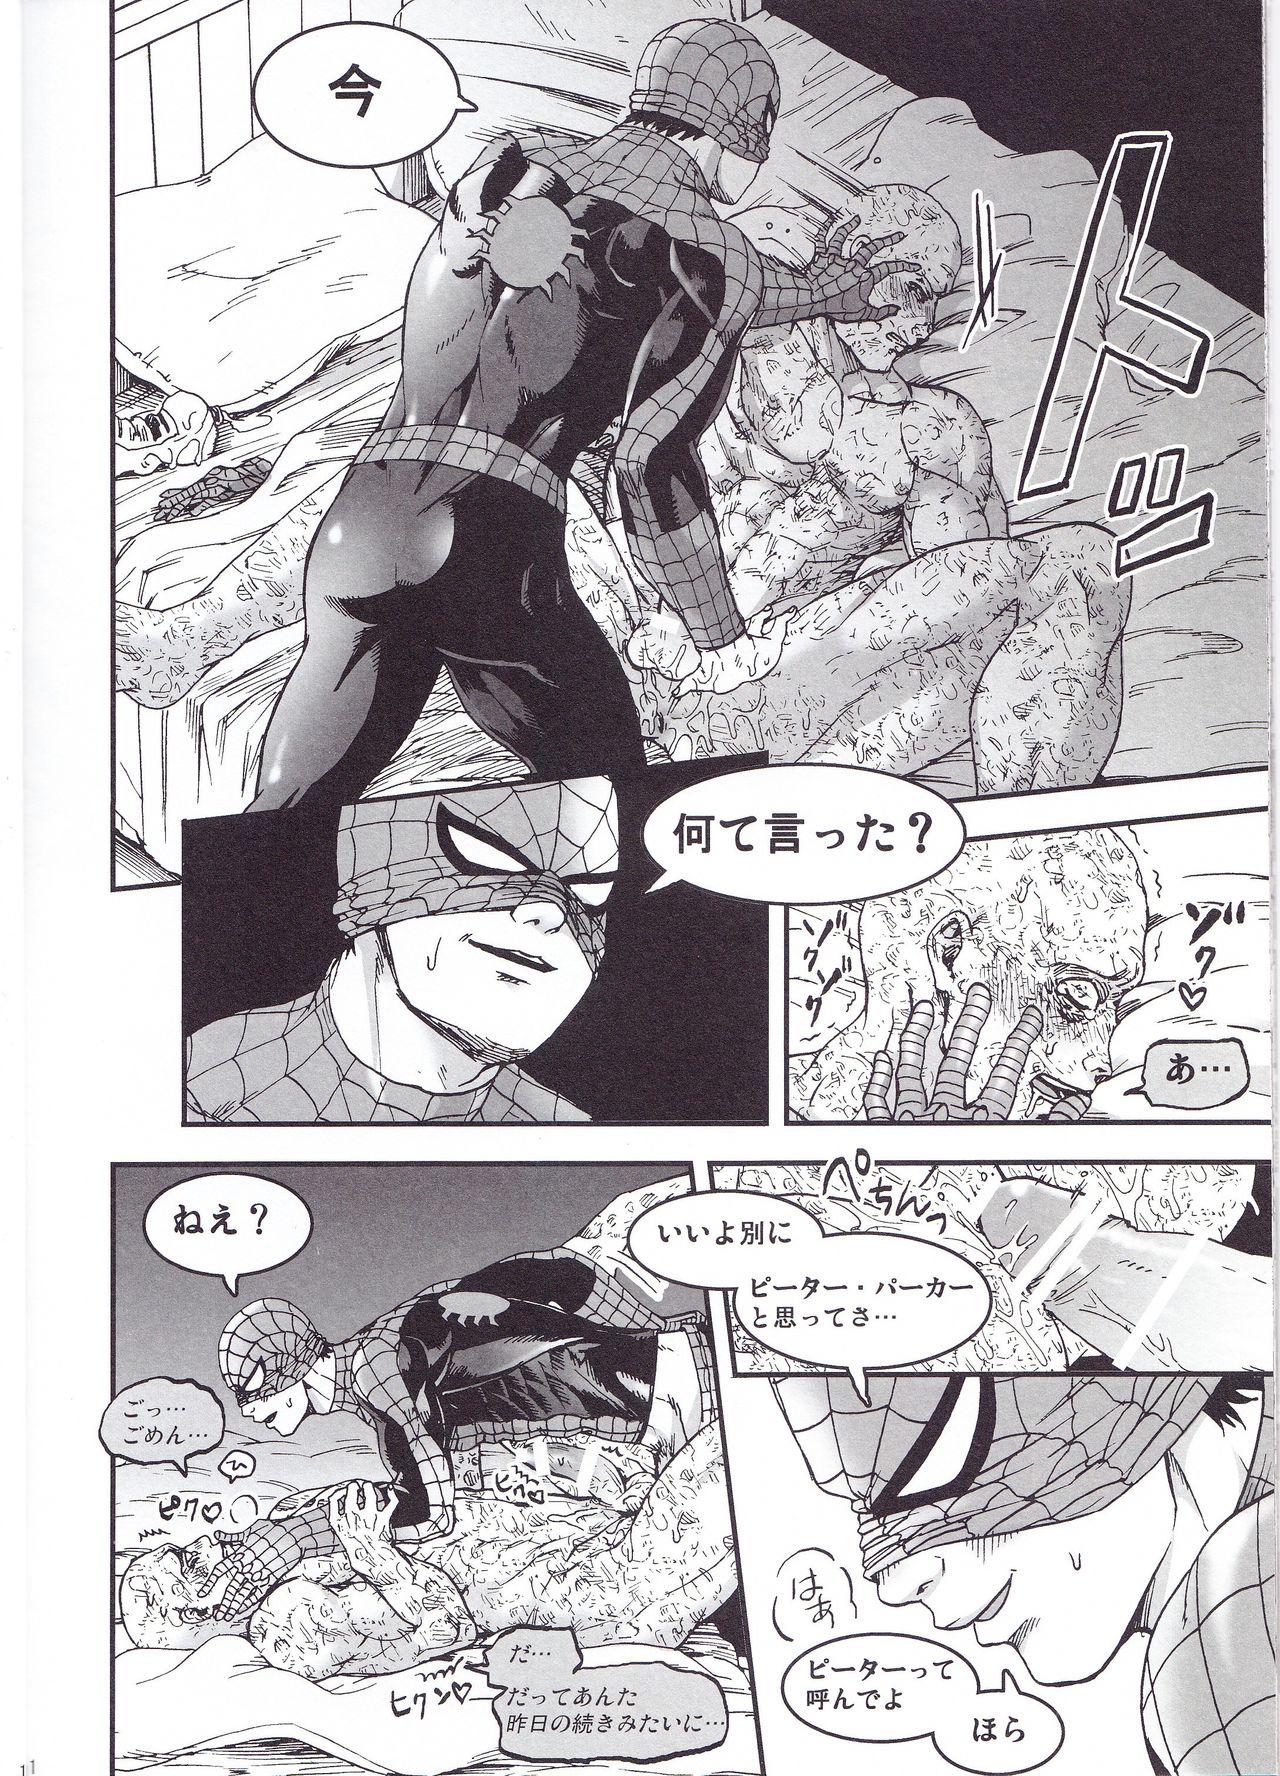 Gros Seins THREE DAYS 2-3 - Spider-man Deadpool Asslicking - Page 10